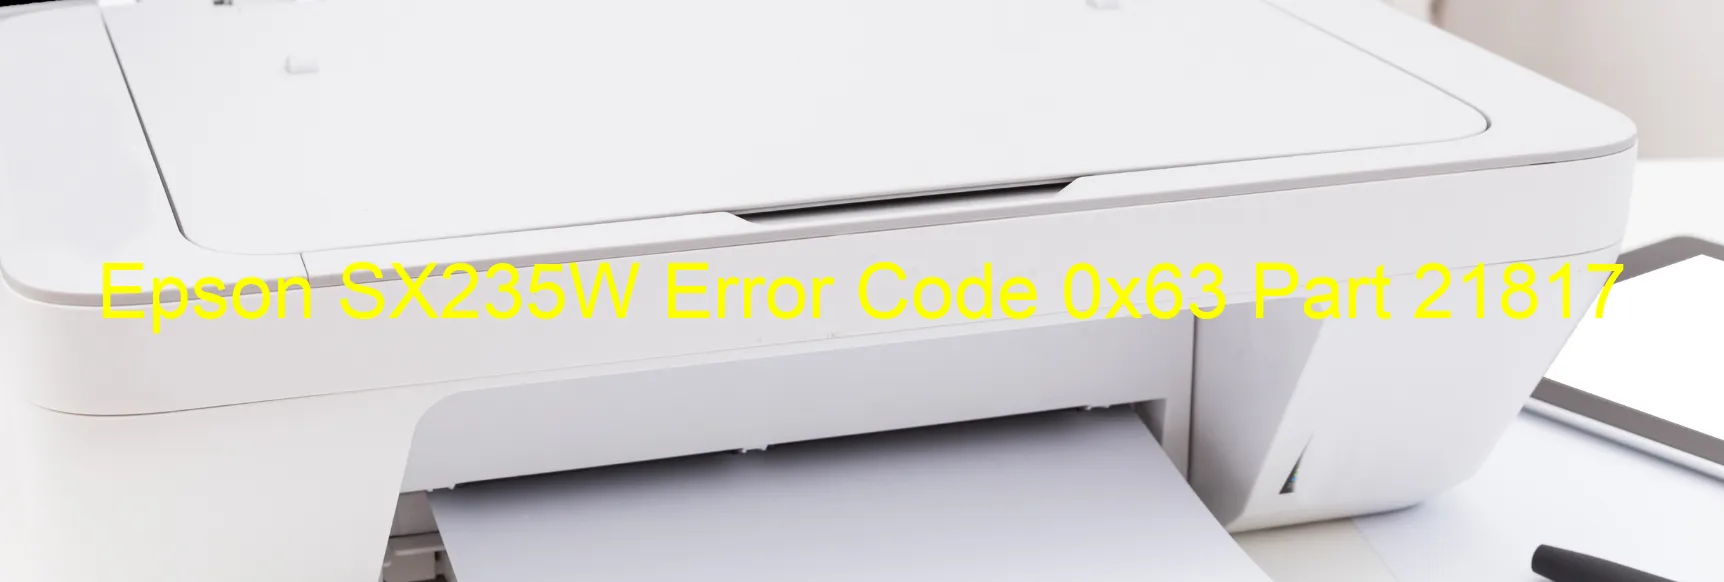 Epson SX235W Error Code 0x63 Part 21817